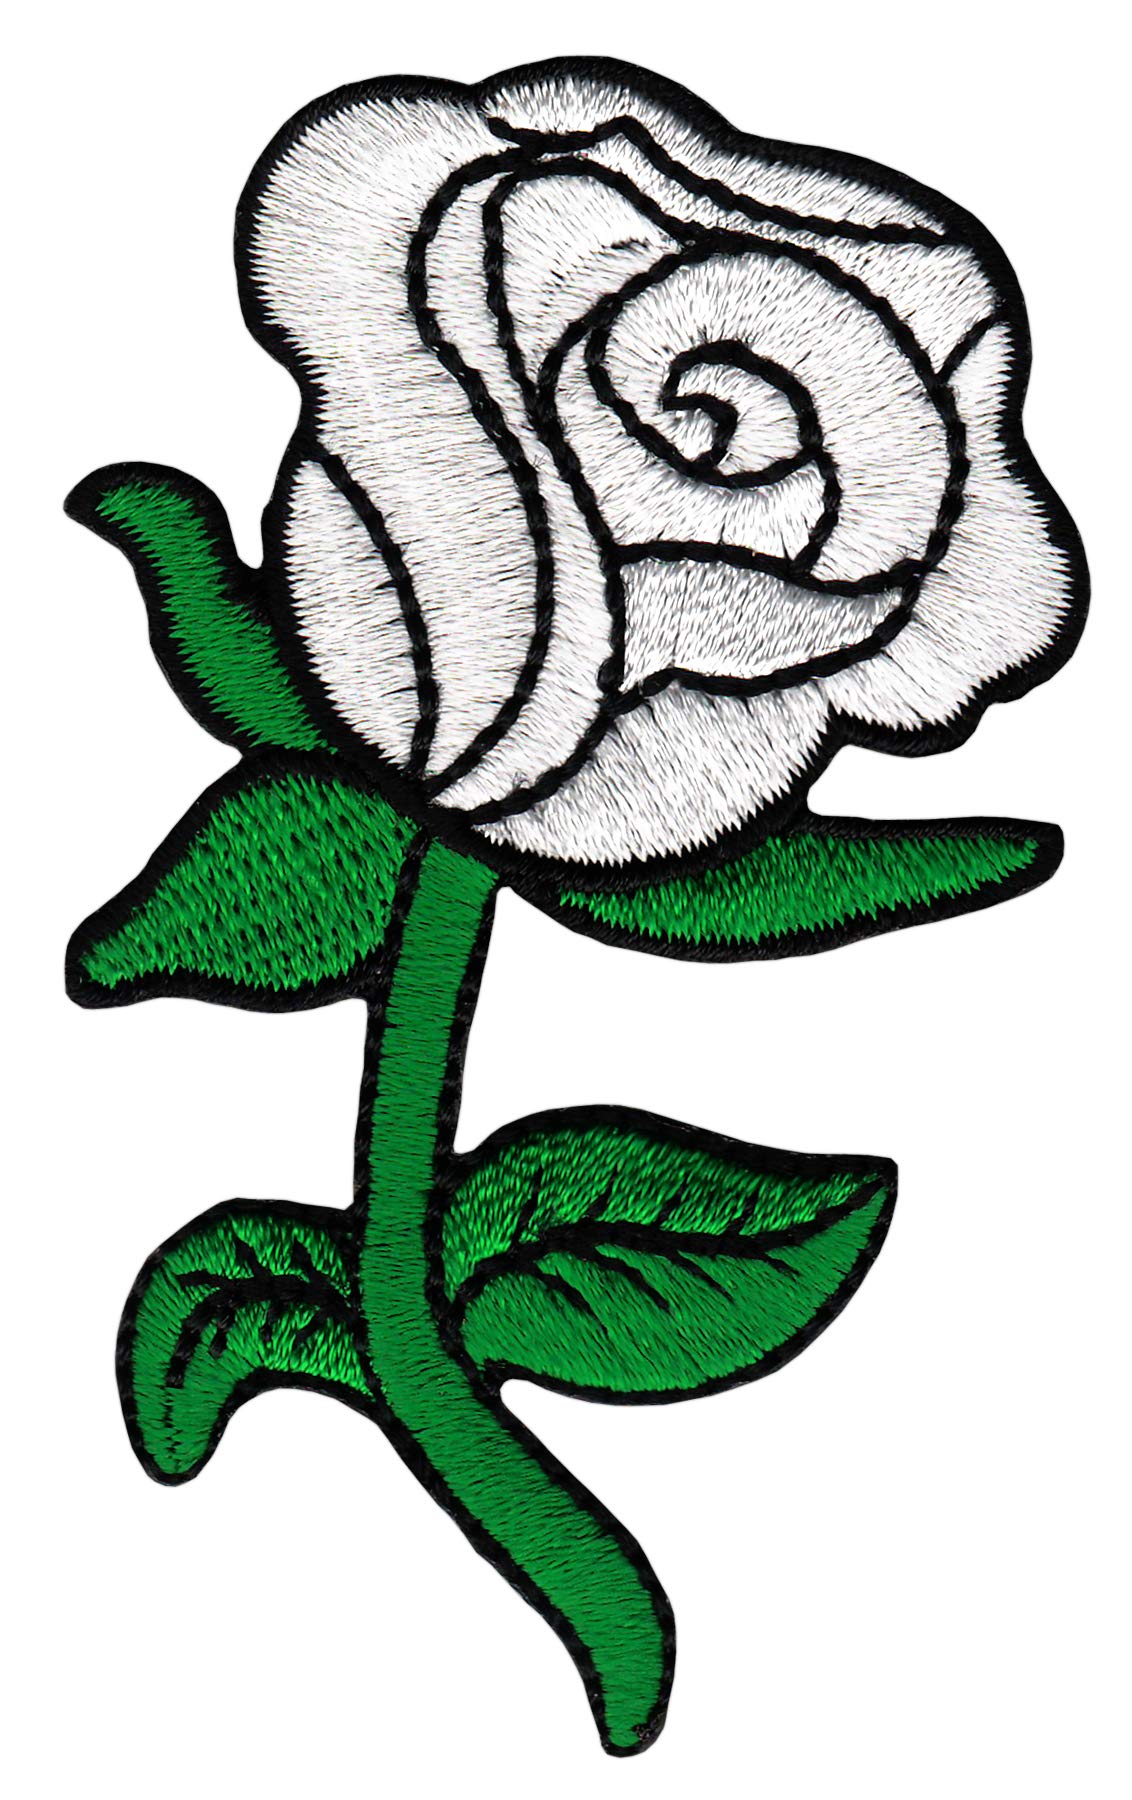 Weiße Rose Blume Aufnäher Bügelbild Patch Größe 5,0 x 8,3 cm von Bestellmich / Aufnäher